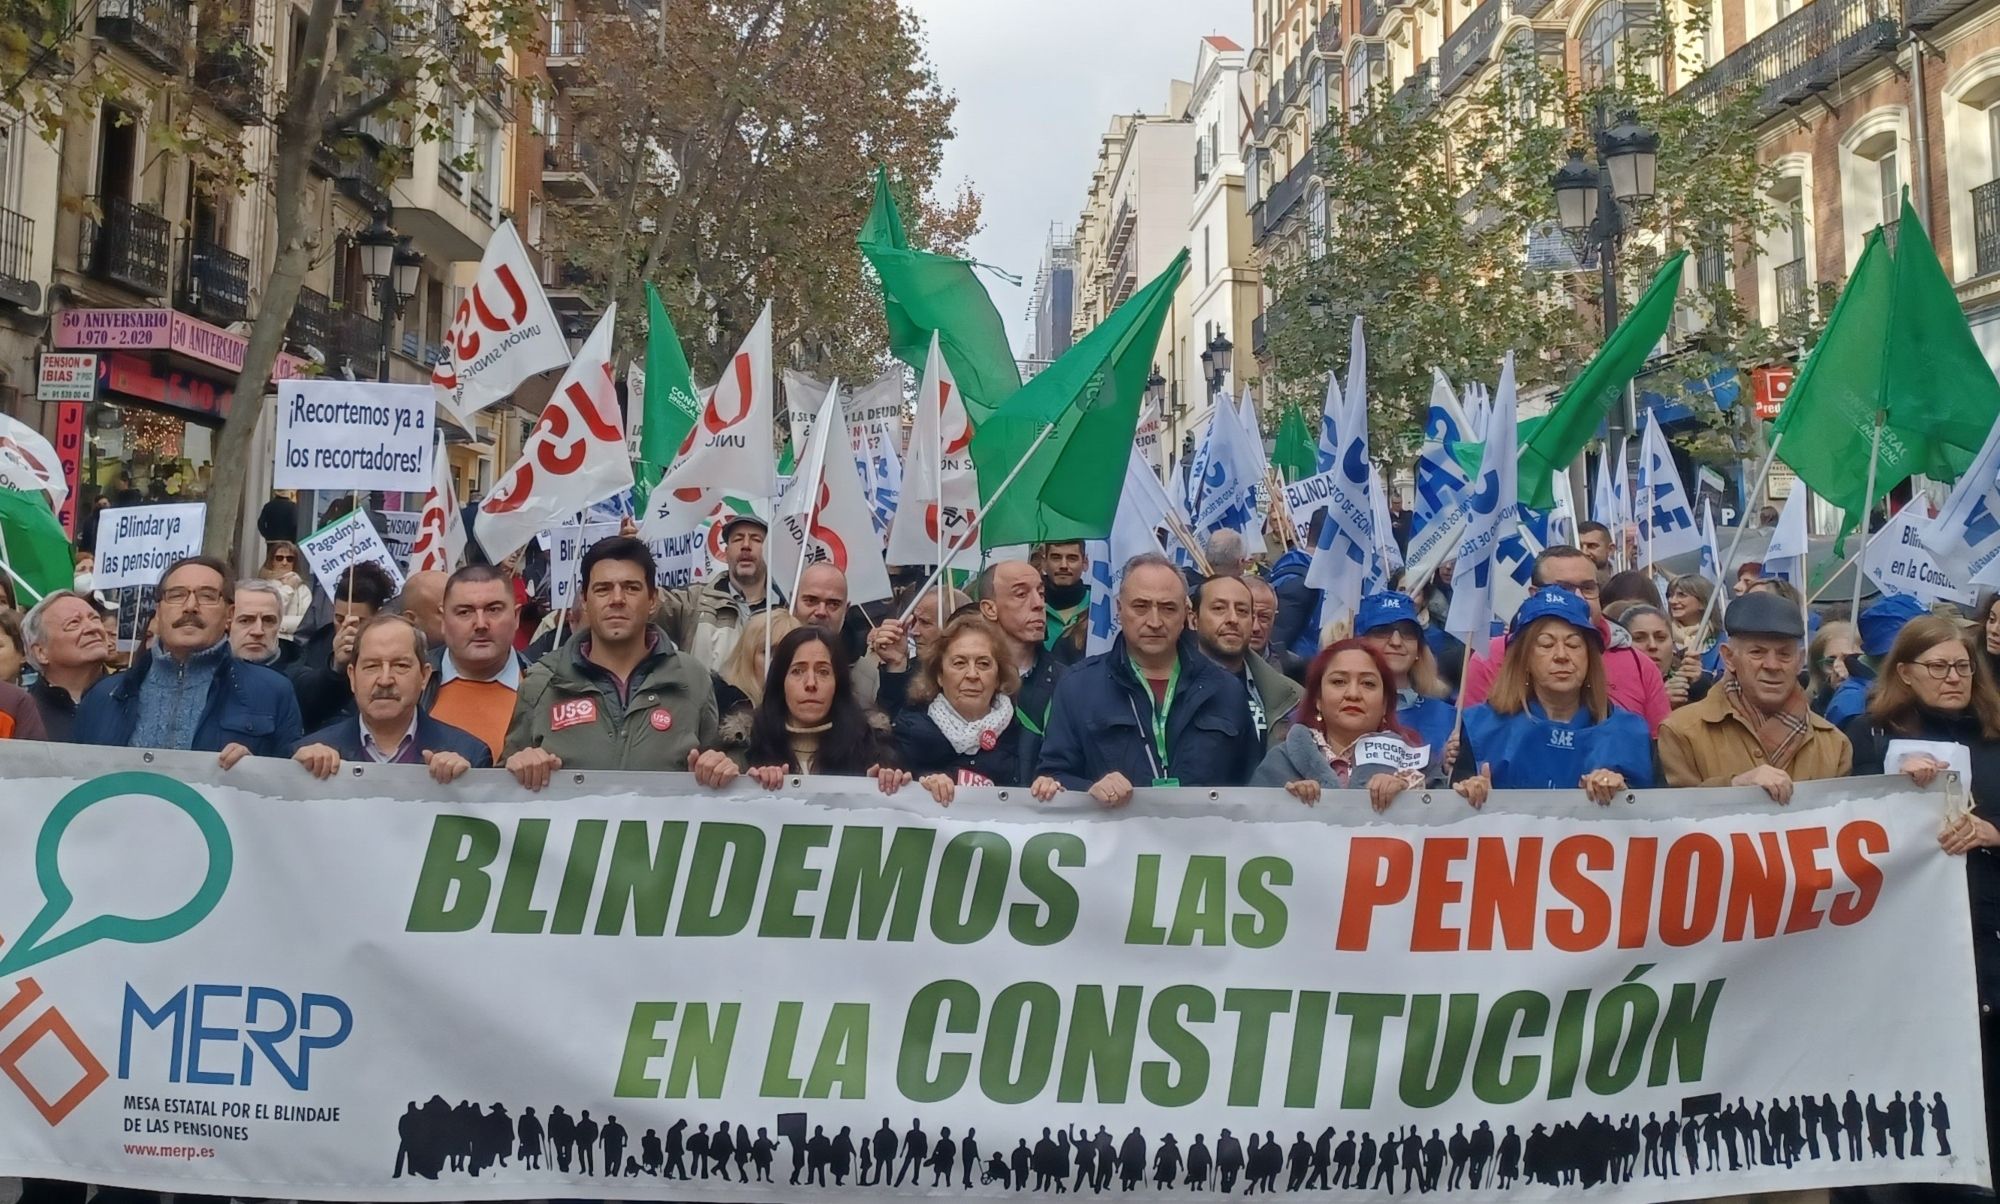 Los pensionistas se manifestarán por el blindaje constitucional durante la investidura de Feijóo